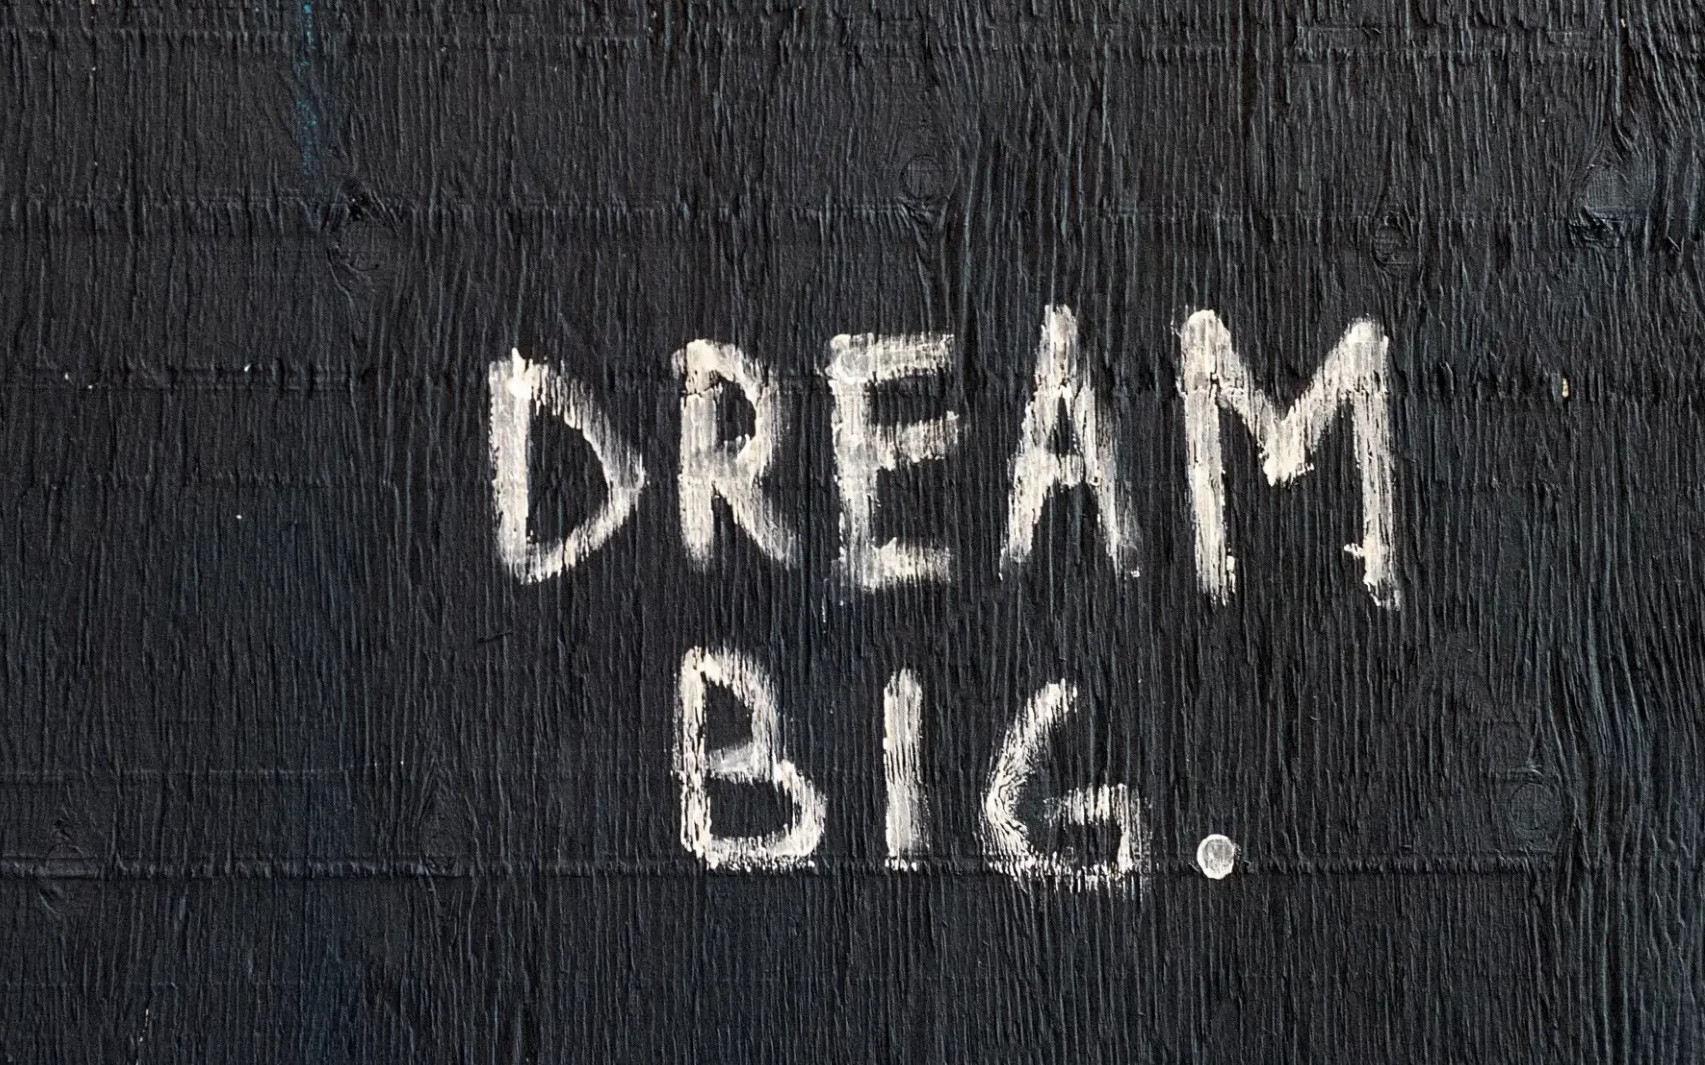 Schriftzug "DREAM BIG" auf dunklem Hintergrund